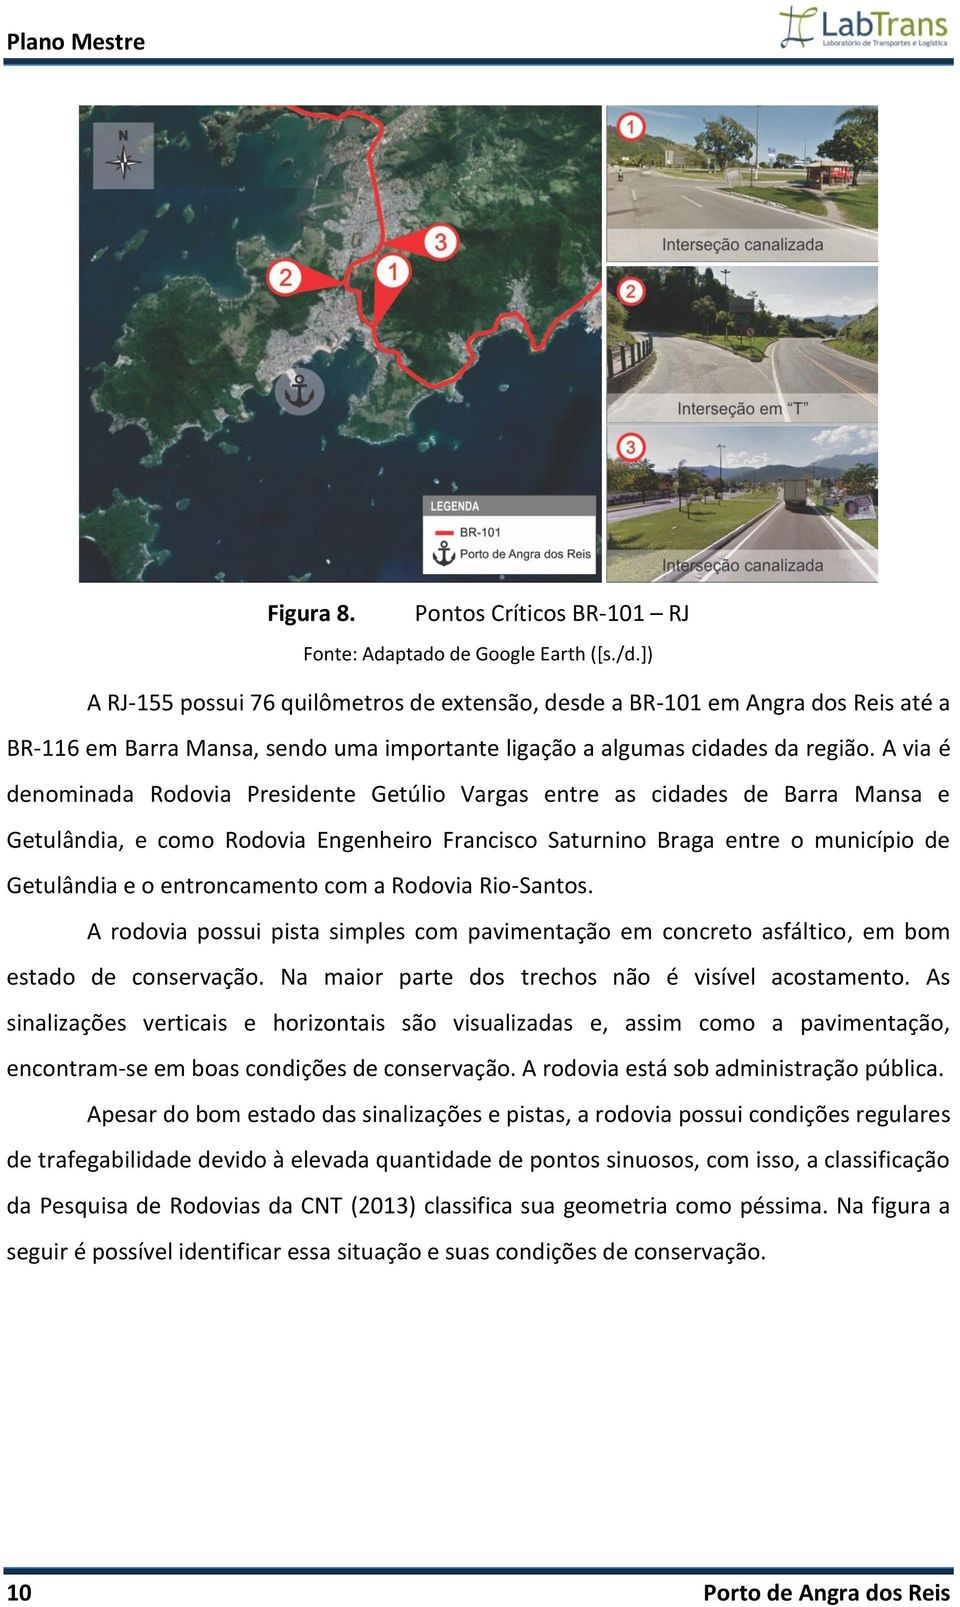 A via é denominada Rodovia Presidente Getúlio Vargas entre as cidades de Barra Mansa e Getulândia, e como Rodovia Engenheiro Francisco Saturnino Braga entre o município de Getulândia e o